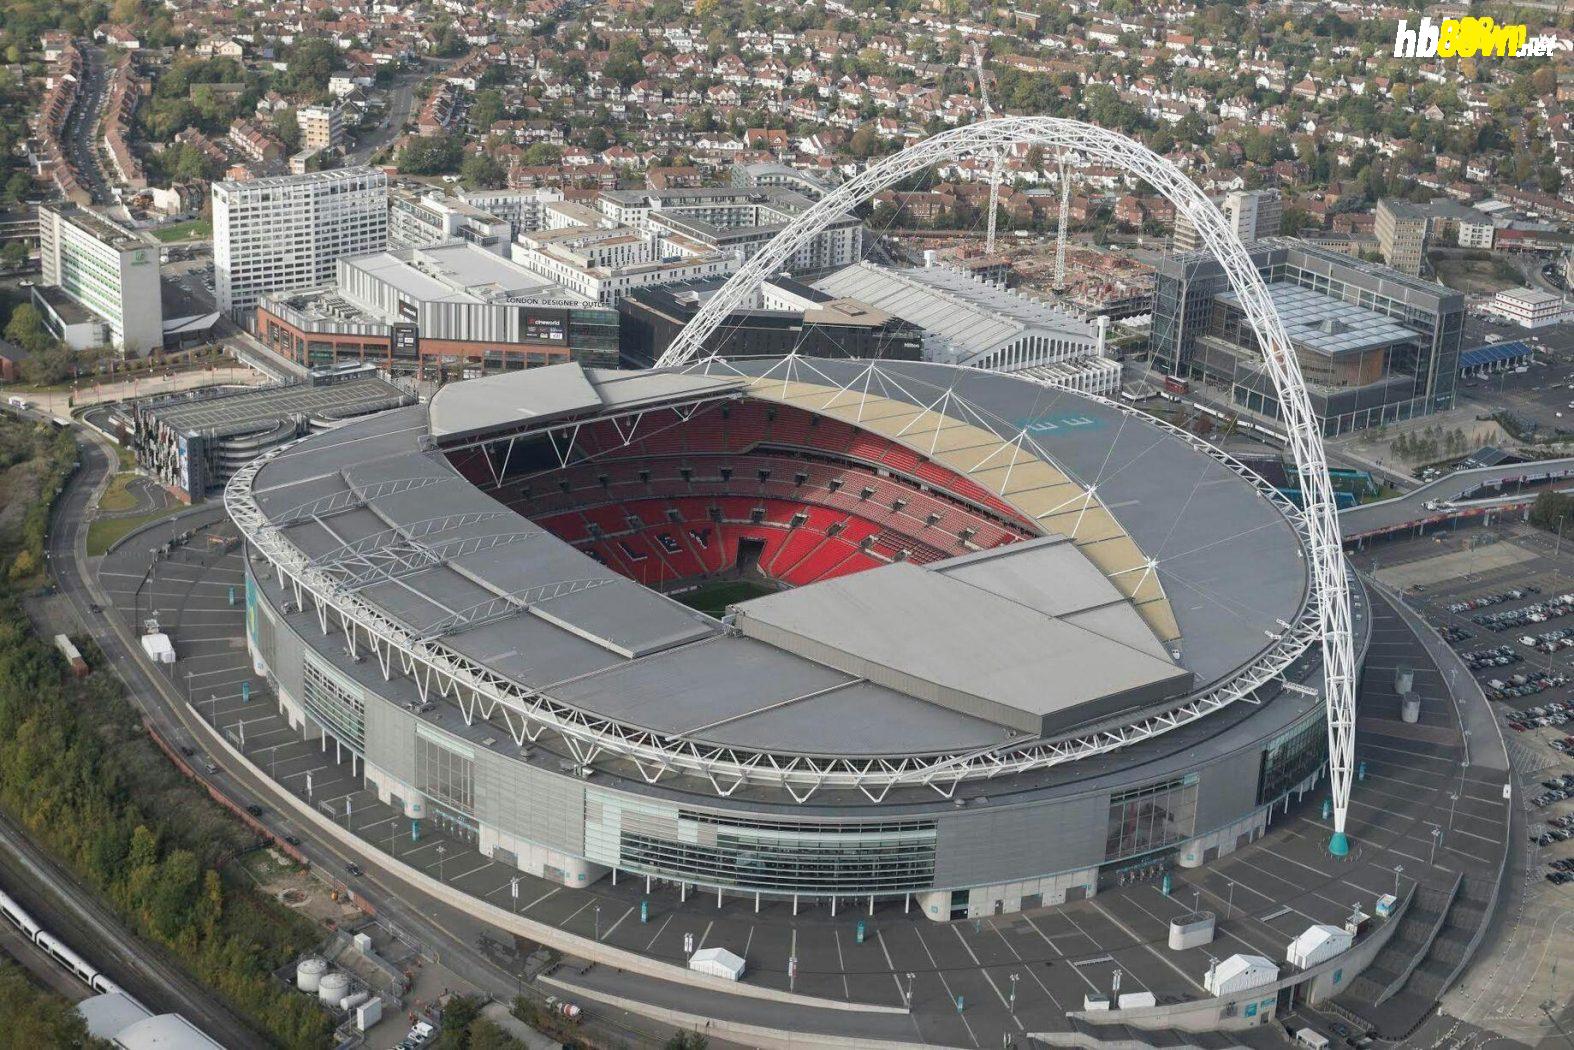 Wembley: Hơn cả một sân vận động, đó là biểu tượng - Bóng Đá